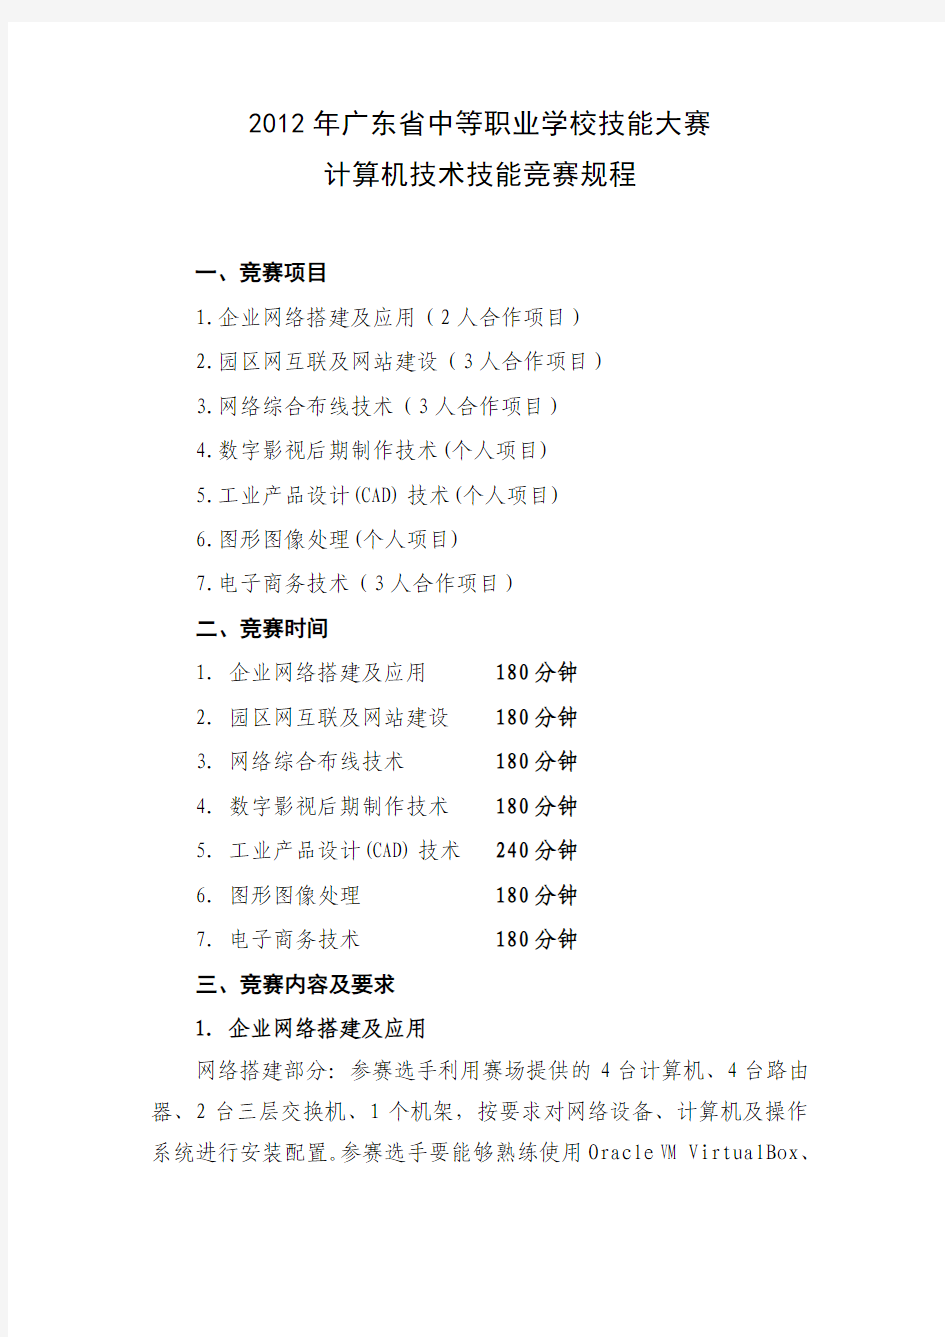 新的2012年广东中职学校计算机技能大赛规程